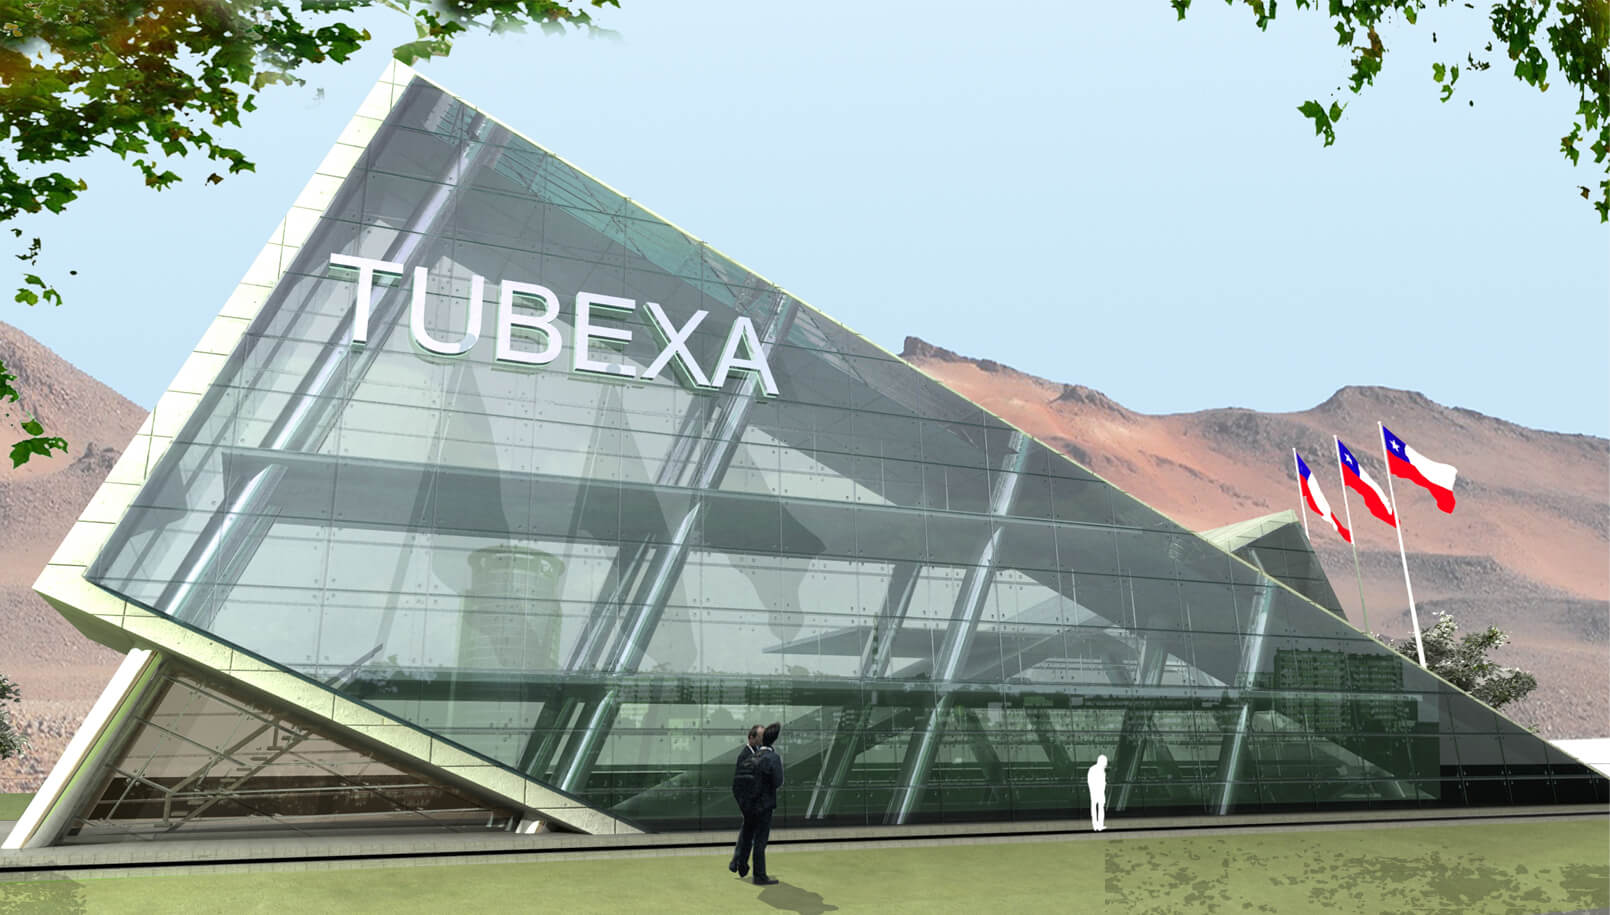 Design for Tubexa headquarter